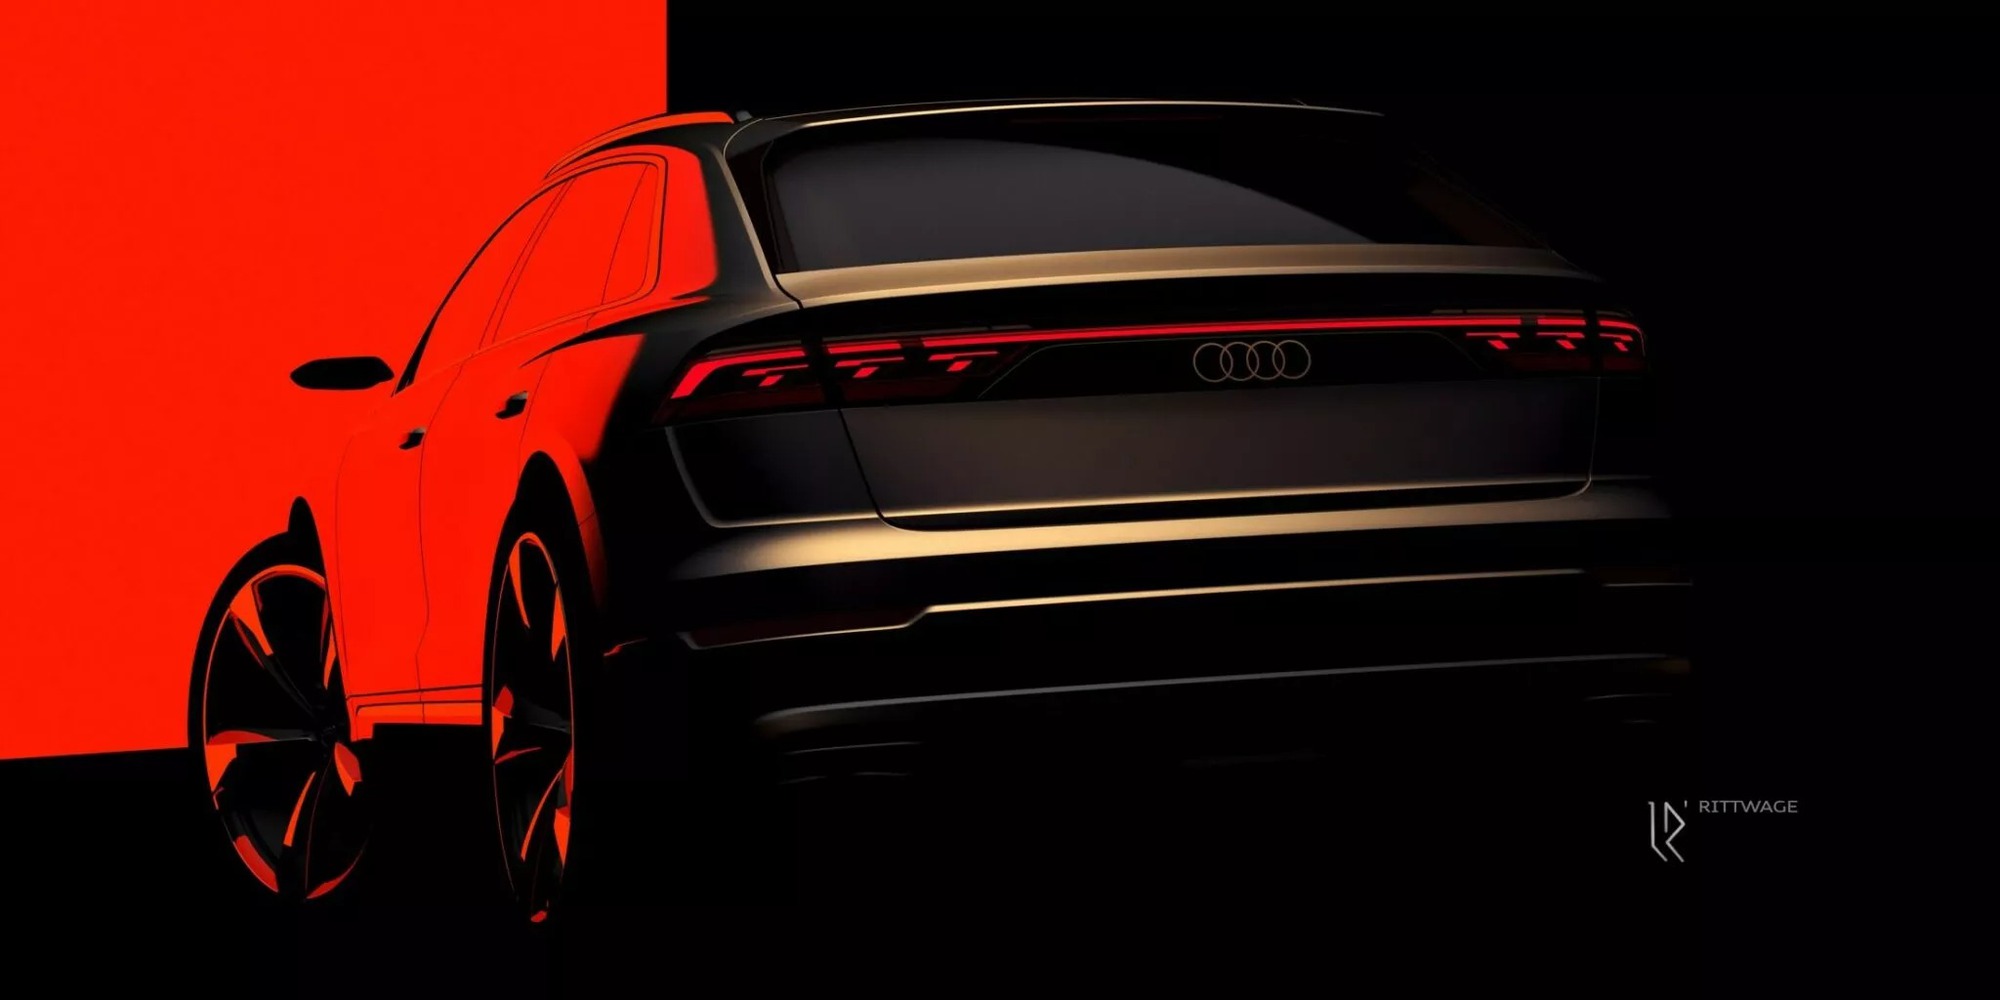 Audi chơi lớn với Q8 facelift với hệ thống đèn hiện đại hơn rõ rệt - Ảnh 1.